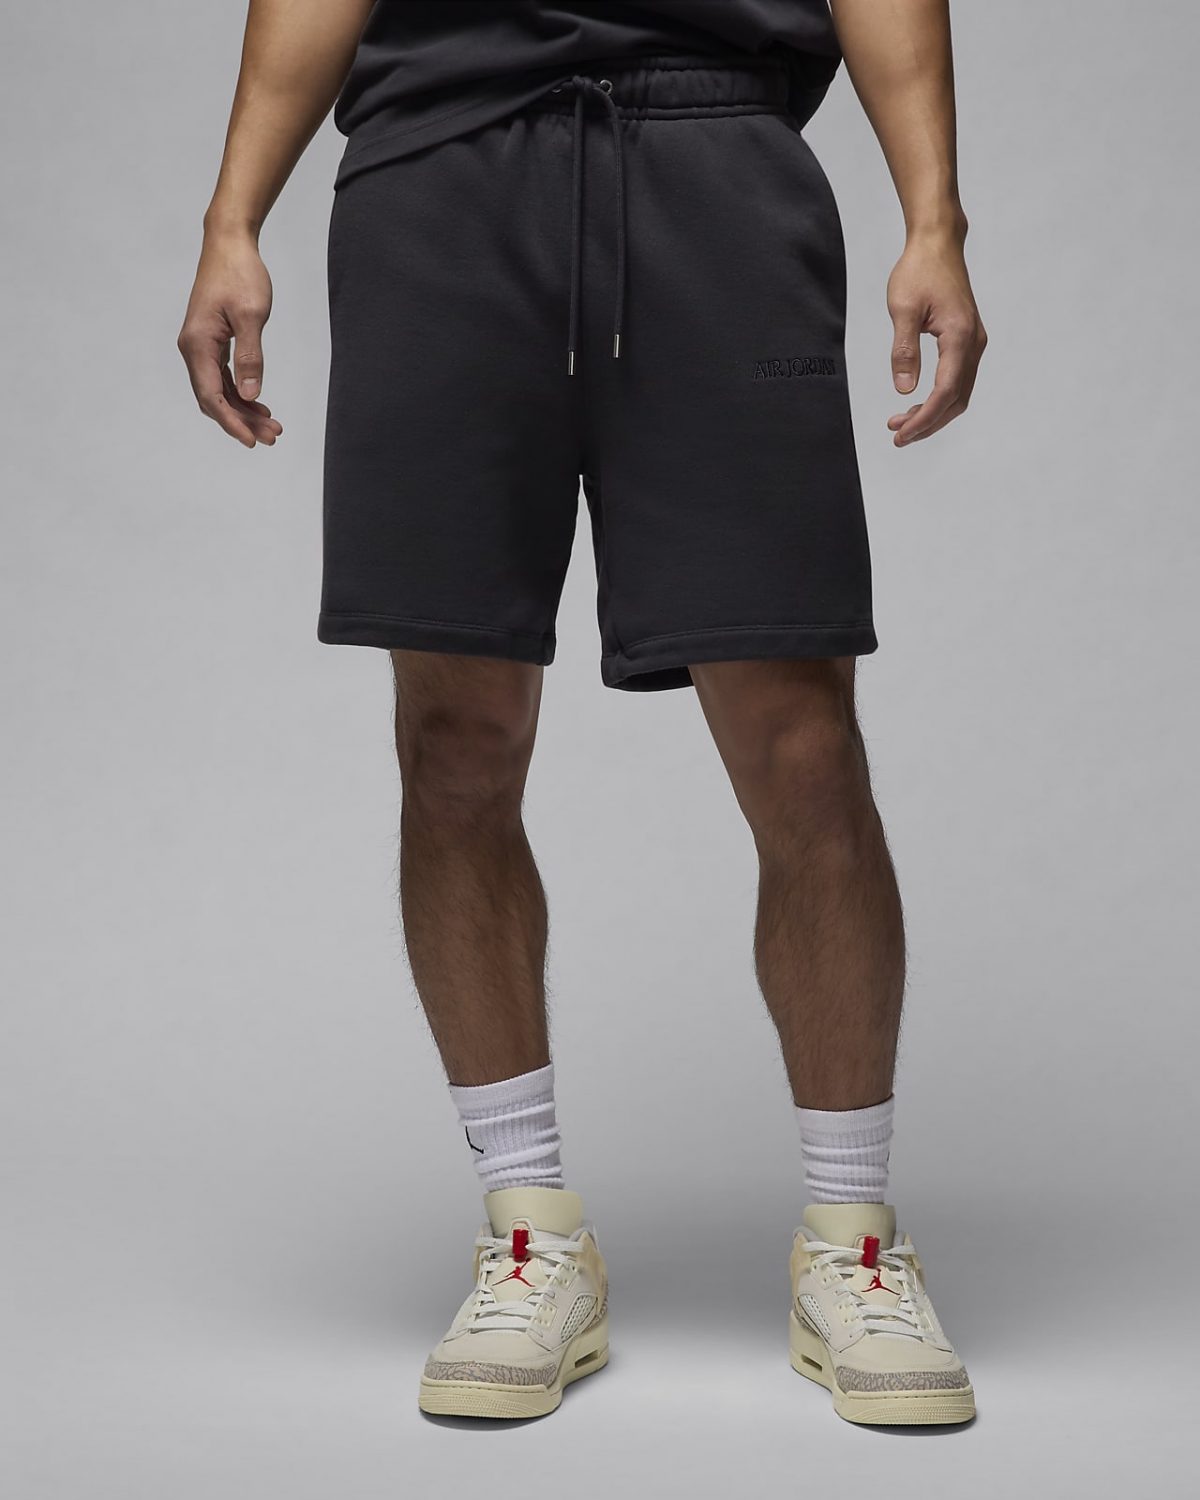 Мужские шорты nike Air Jordan Wordmark черные фото